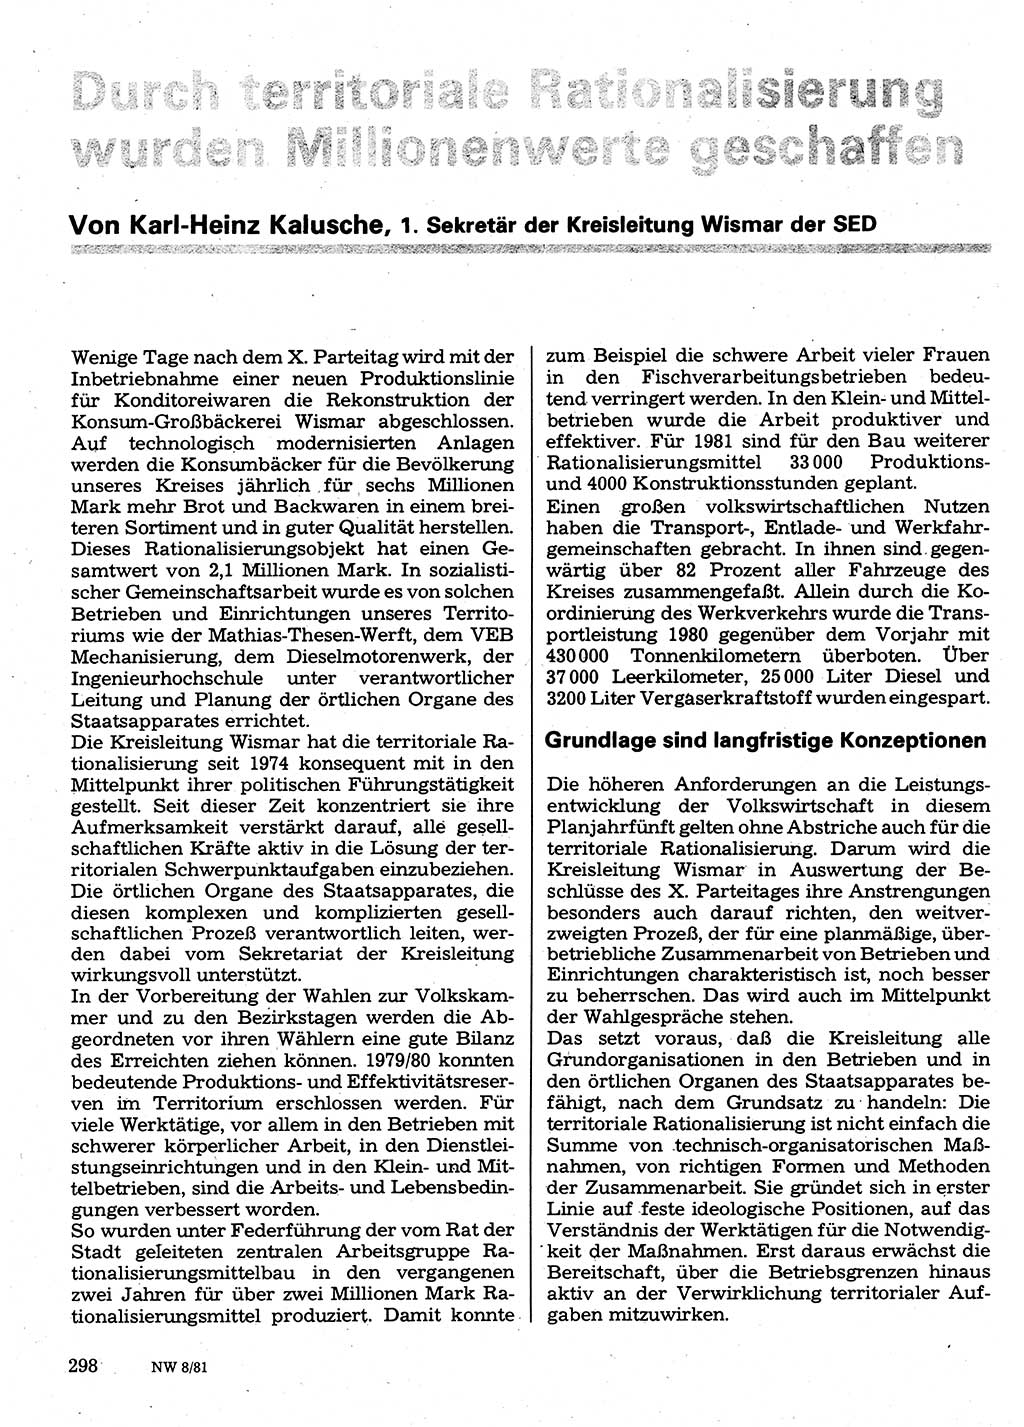 Neuer Weg (NW), Organ des Zentralkomitees (ZK) der SED (Sozialistische Einheitspartei Deutschlands) für Fragen des Parteilebens, 36. Jahrgang [Deutsche Demokratische Republik (DDR)] 1981, Seite 298 (NW ZK SED DDR 1981, S. 298)